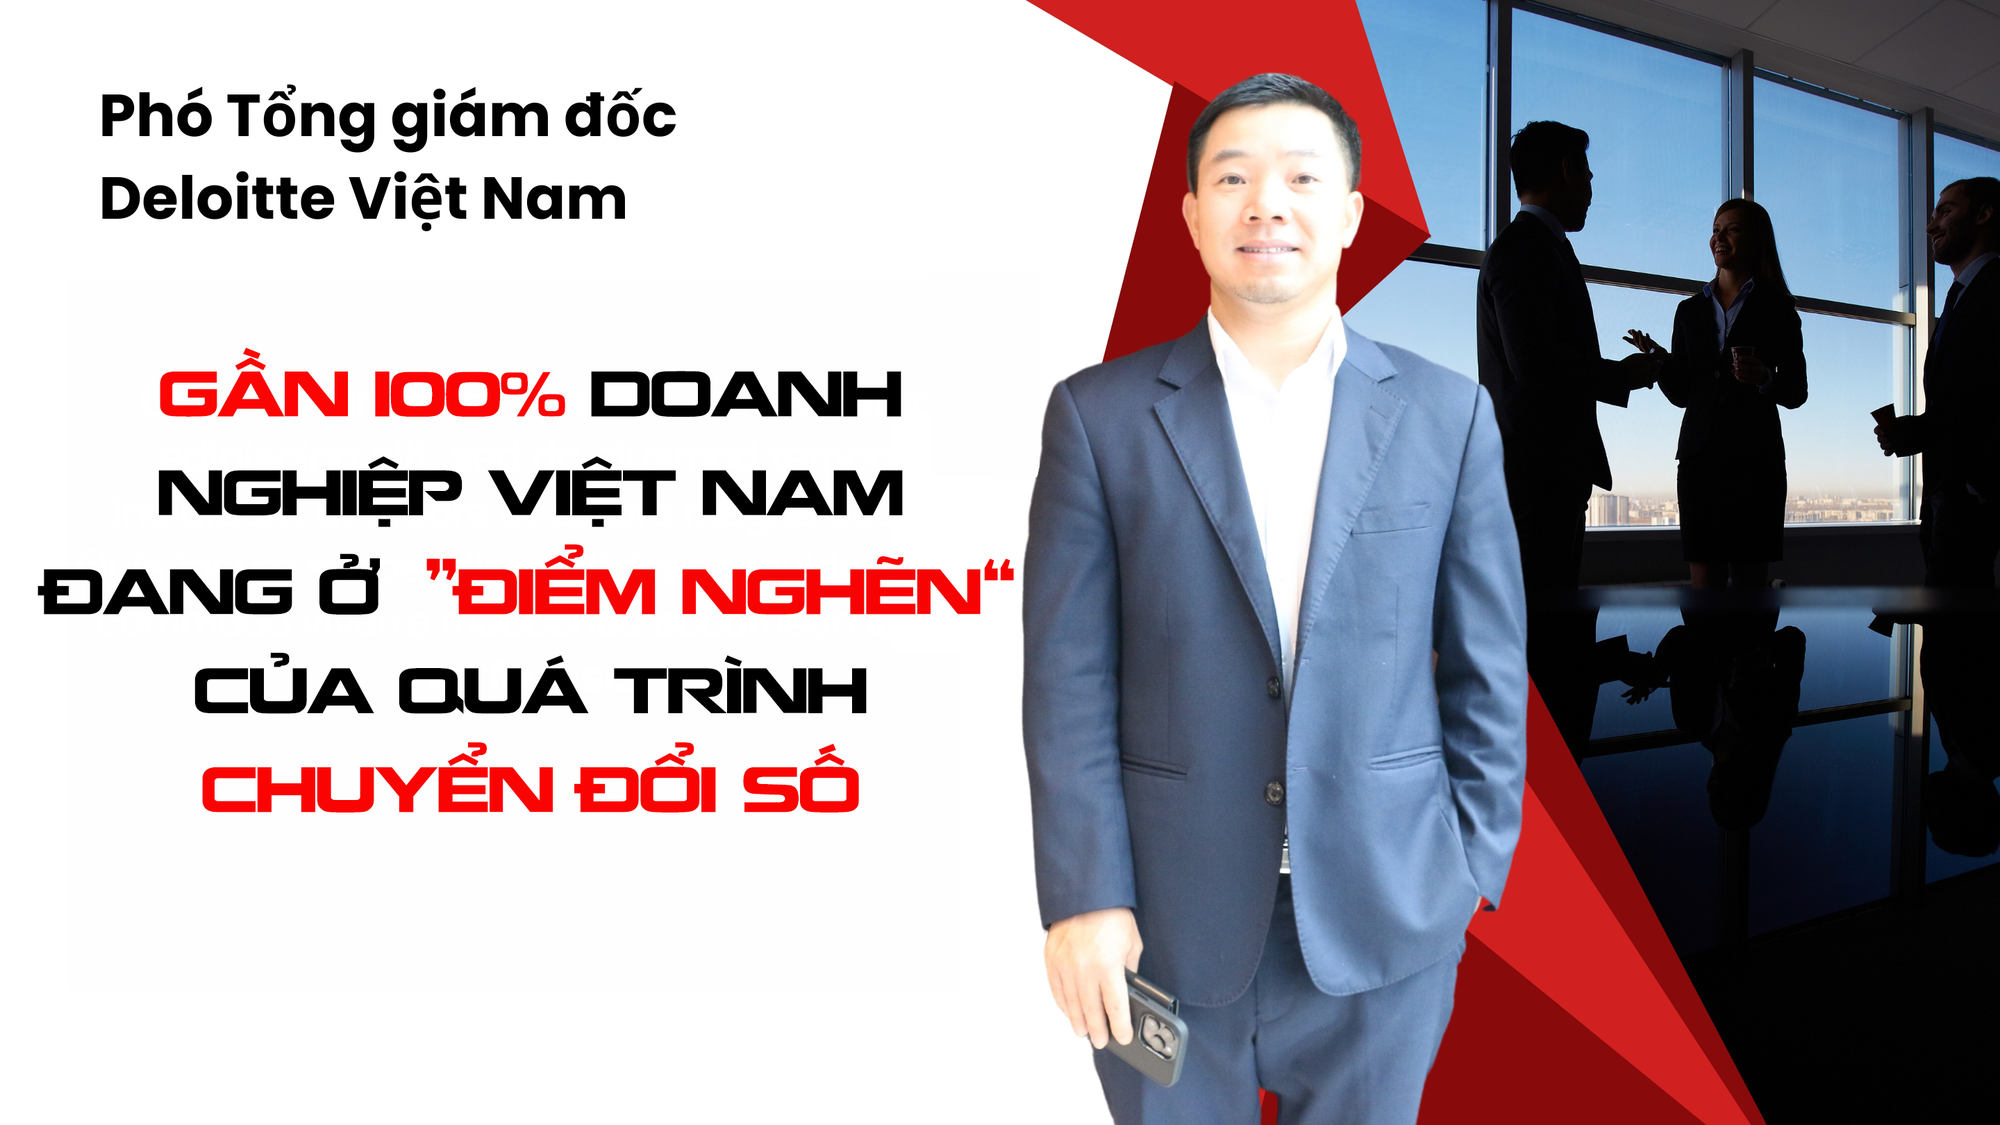 Ông Đỗ Danh Thanh - Phó Tổng giám đốc Deloitte Việt Nam